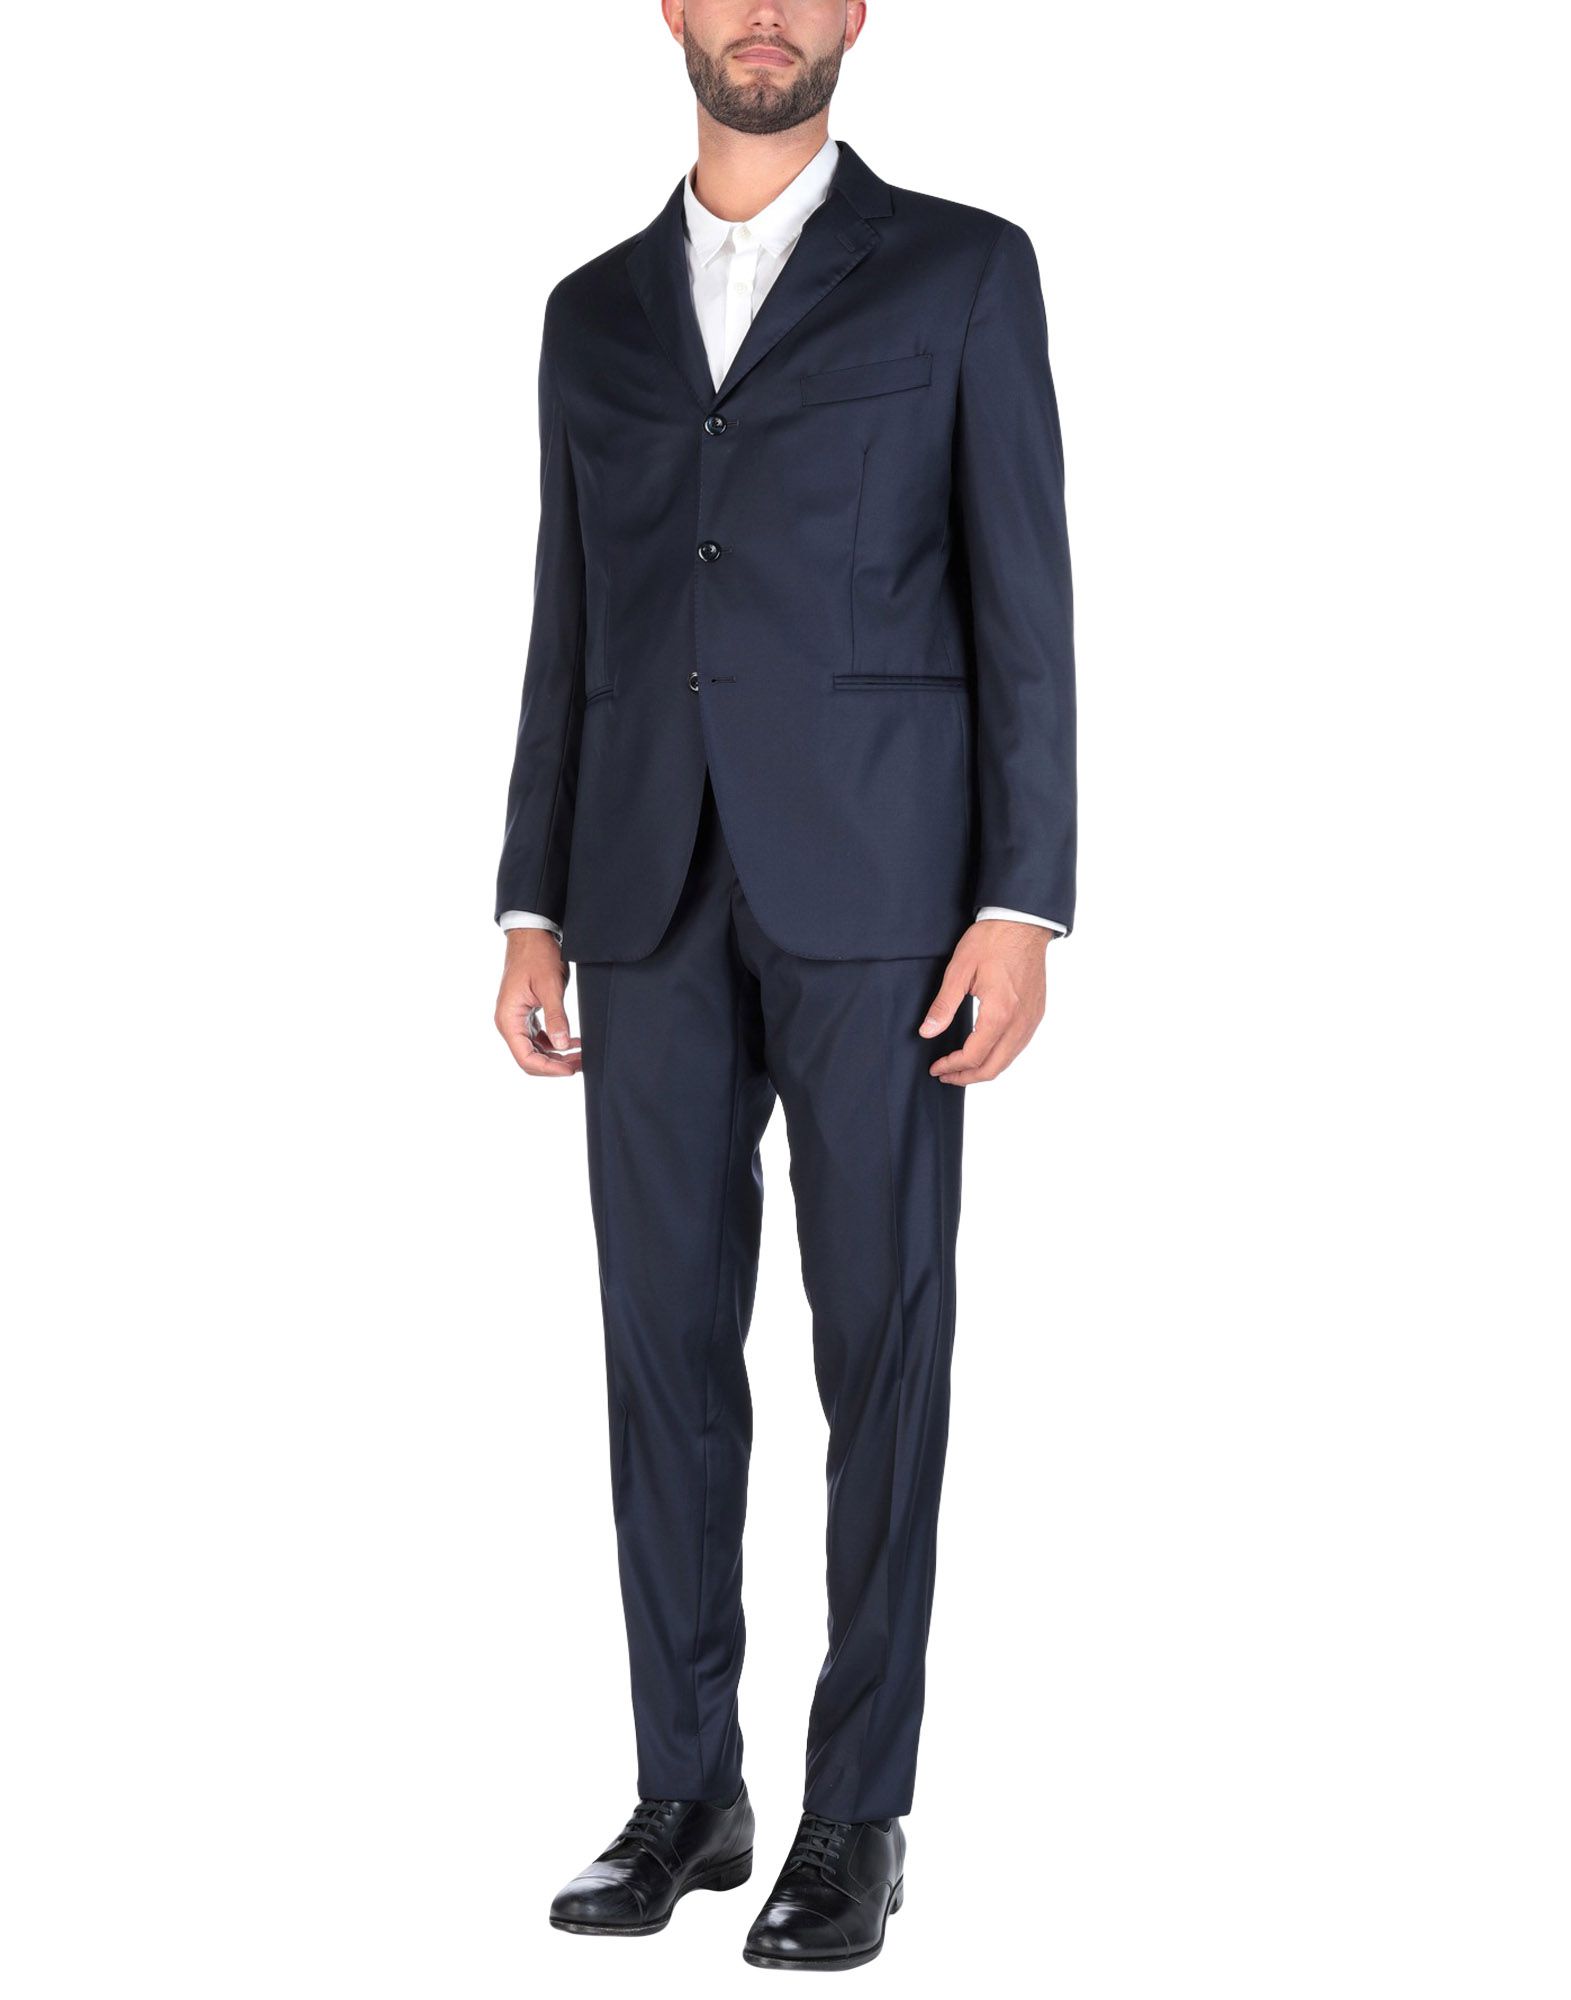 《送料無料》DANPOL Torino メンズ スーツ ダークブルー 60 バージンウール 100%